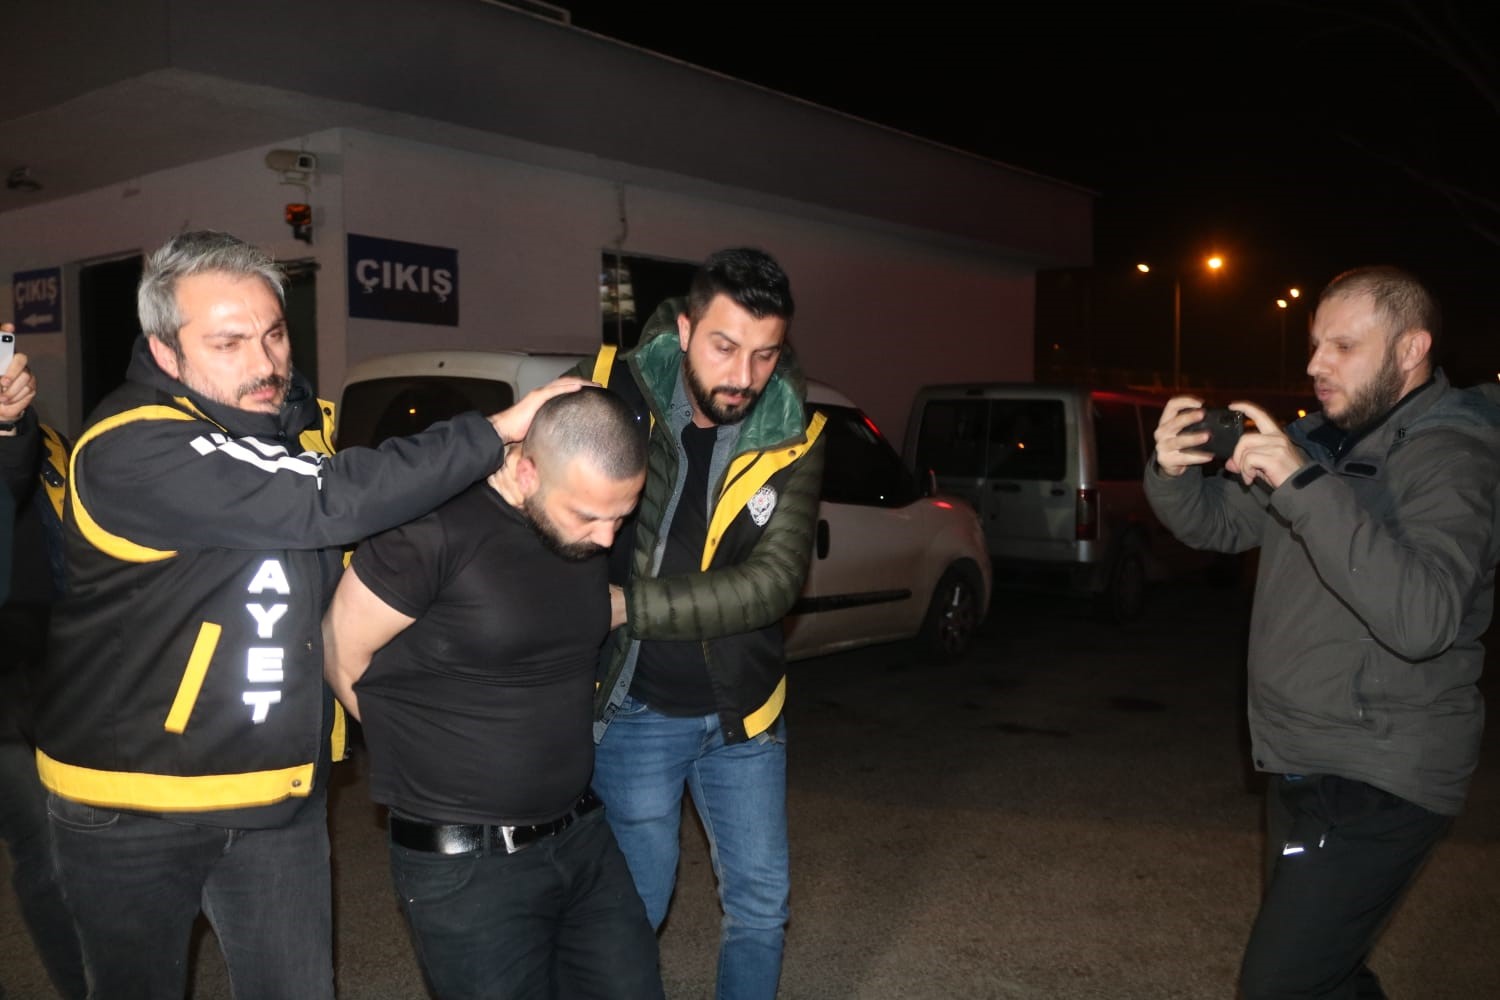 Bursa’da 2 kişiyi öldürdü, cesetlerden birini bagajına koyduğu otomobille İstanbul’da yakalandı